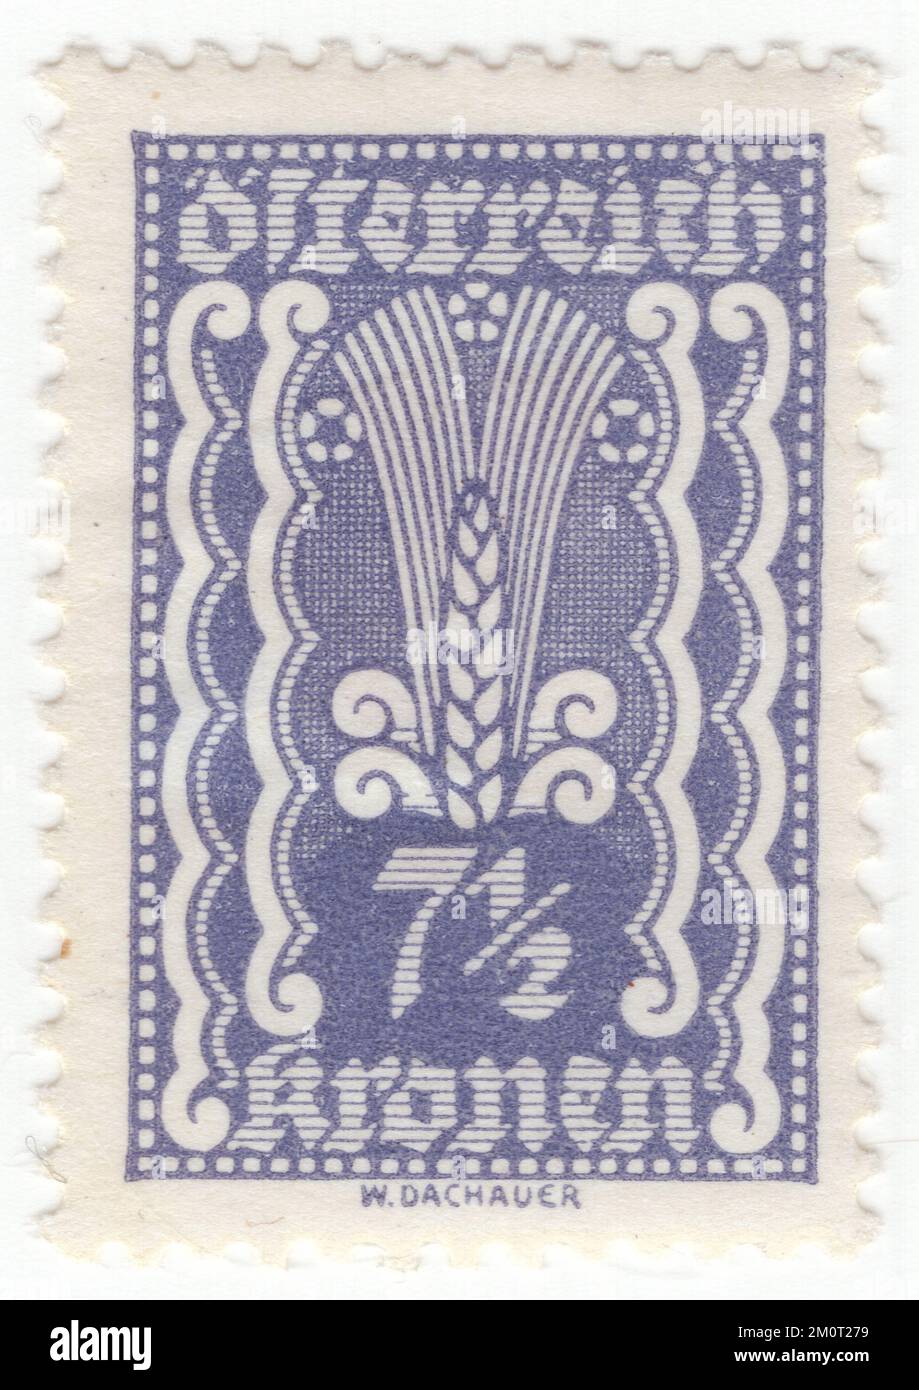 ÖSTERREICH — 1922: Eine grau-violette Briefmarke von 7½ Krone, auf der Roggenohren als landwirtschaftliche Symbole dargestellt sind. Die Ausgabe zeigt die Symbole Landwirtschaft, Arbeit und Industrie Stockfoto